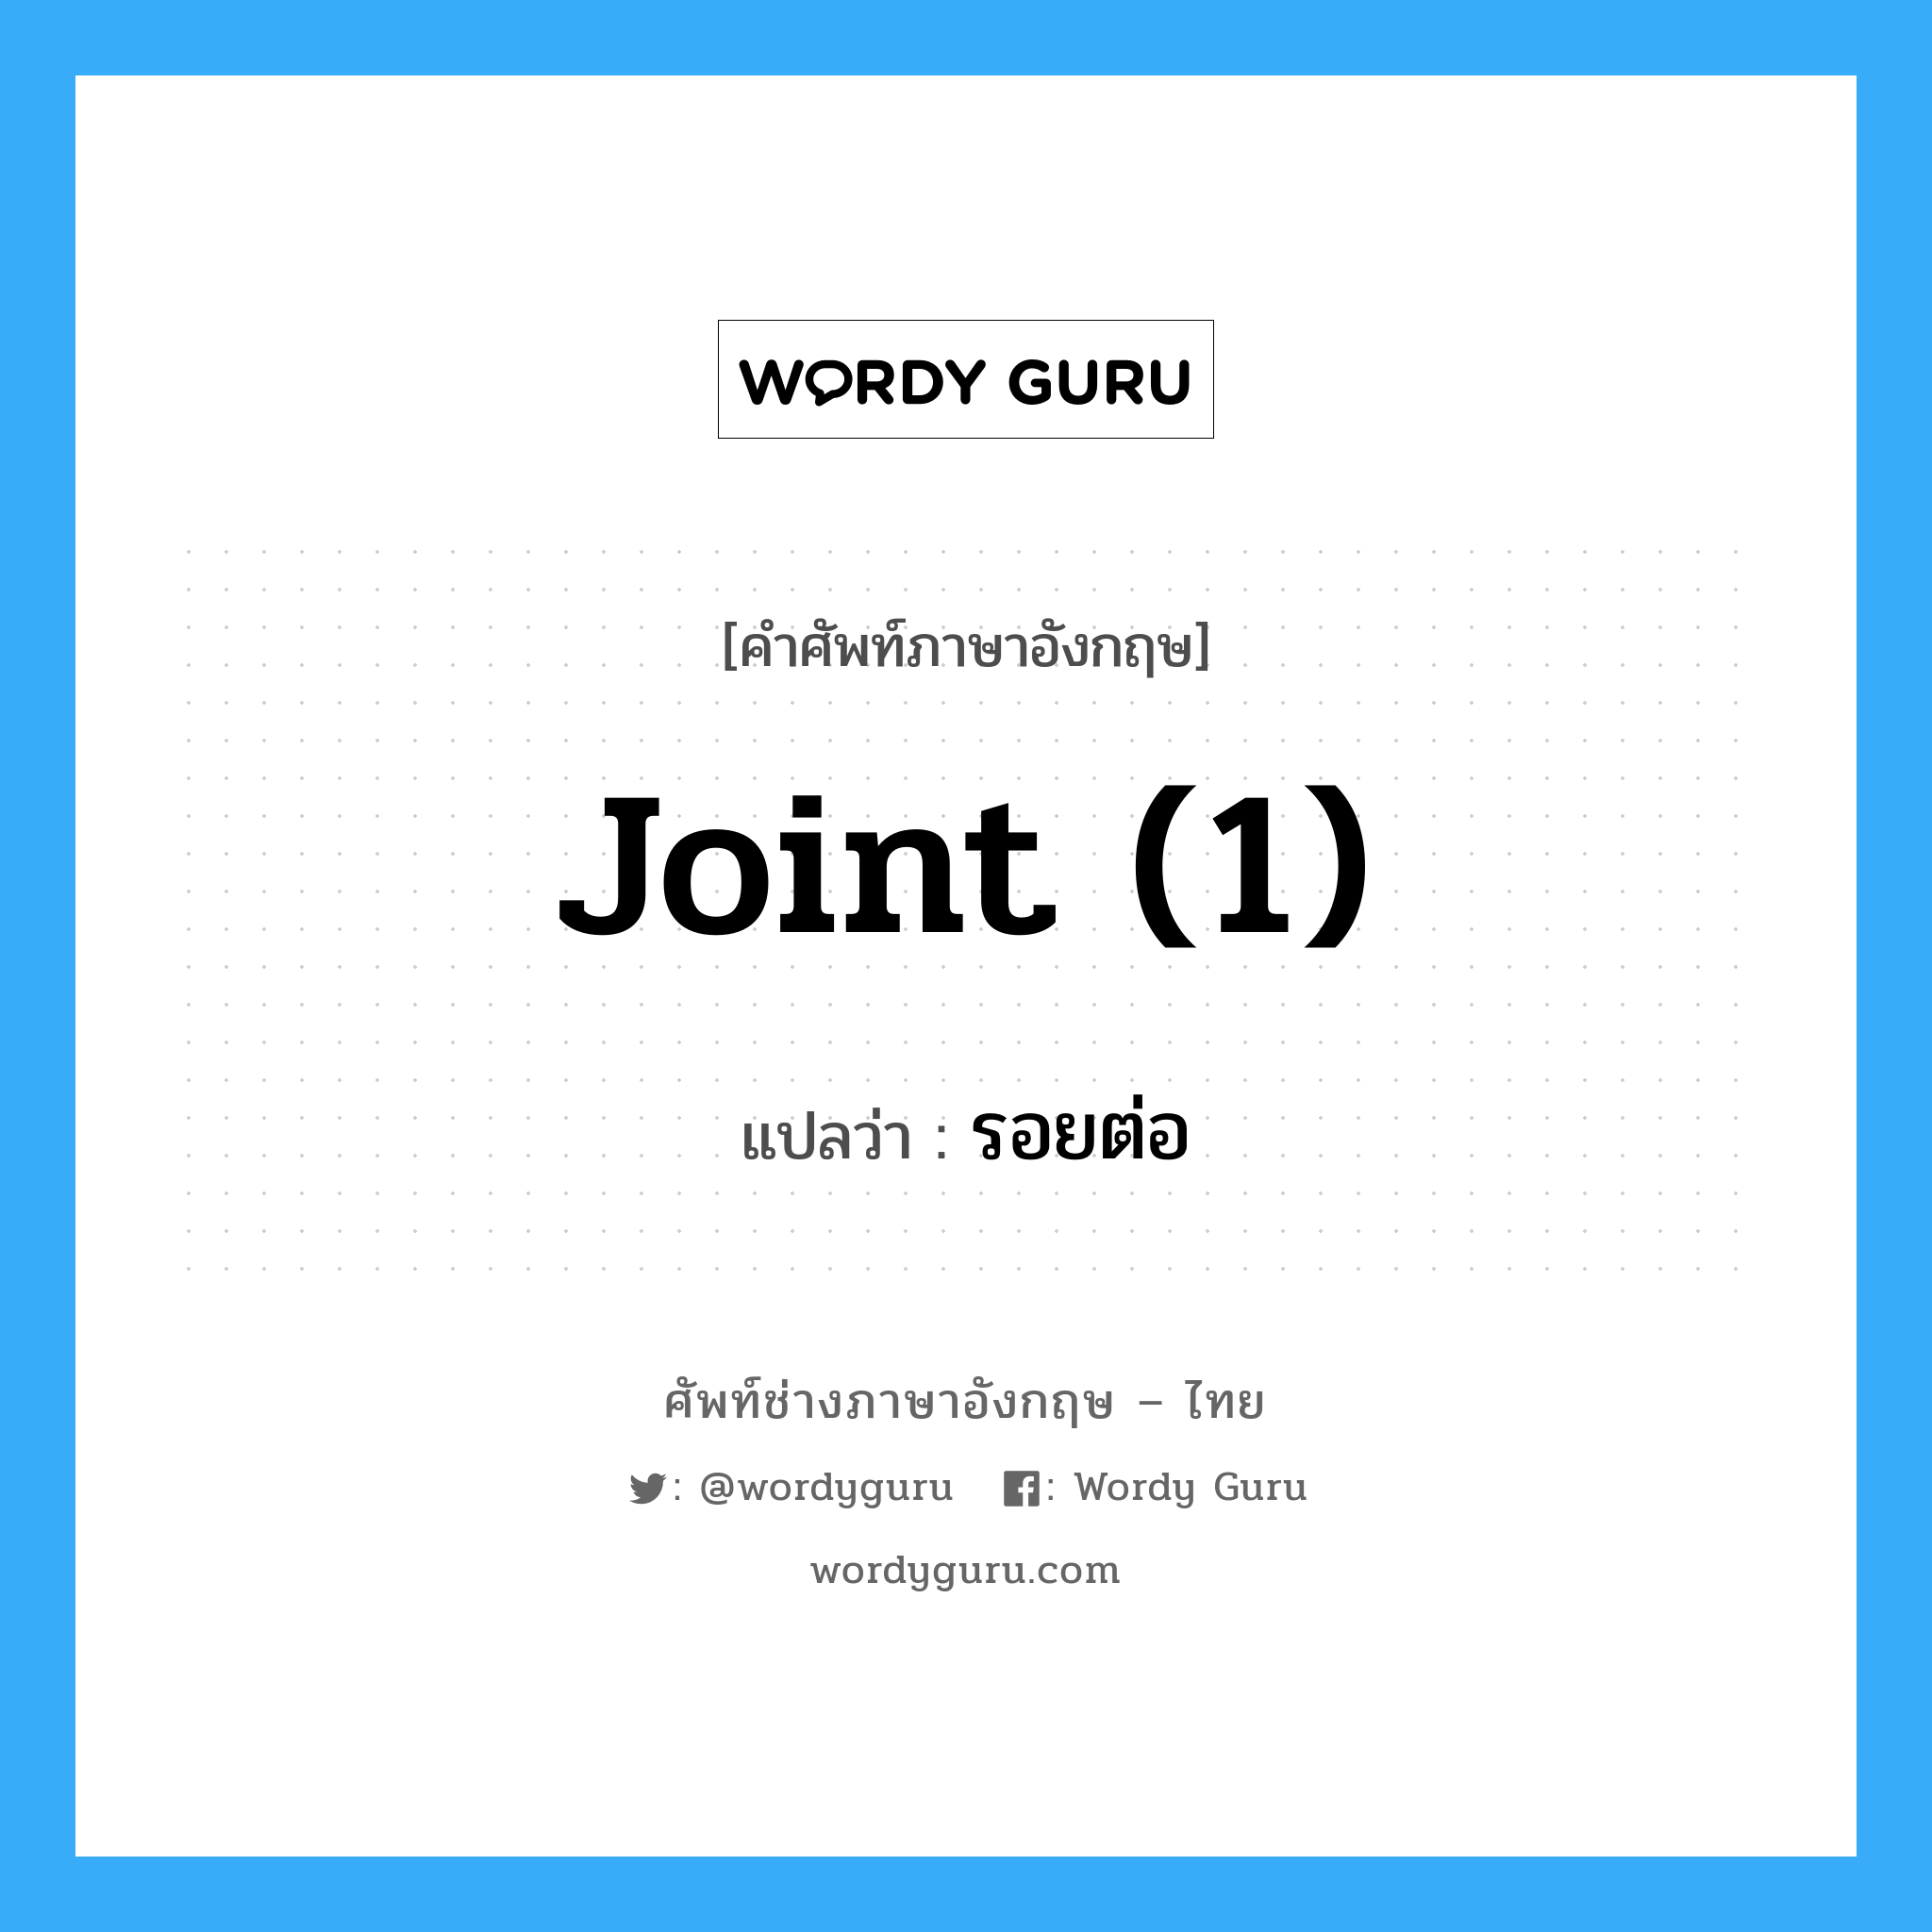 joint (1) แปลว่า?, คำศัพท์ช่างภาษาอังกฤษ - ไทย joint (1) คำศัพท์ภาษาอังกฤษ joint (1) แปลว่า รอยต่อ